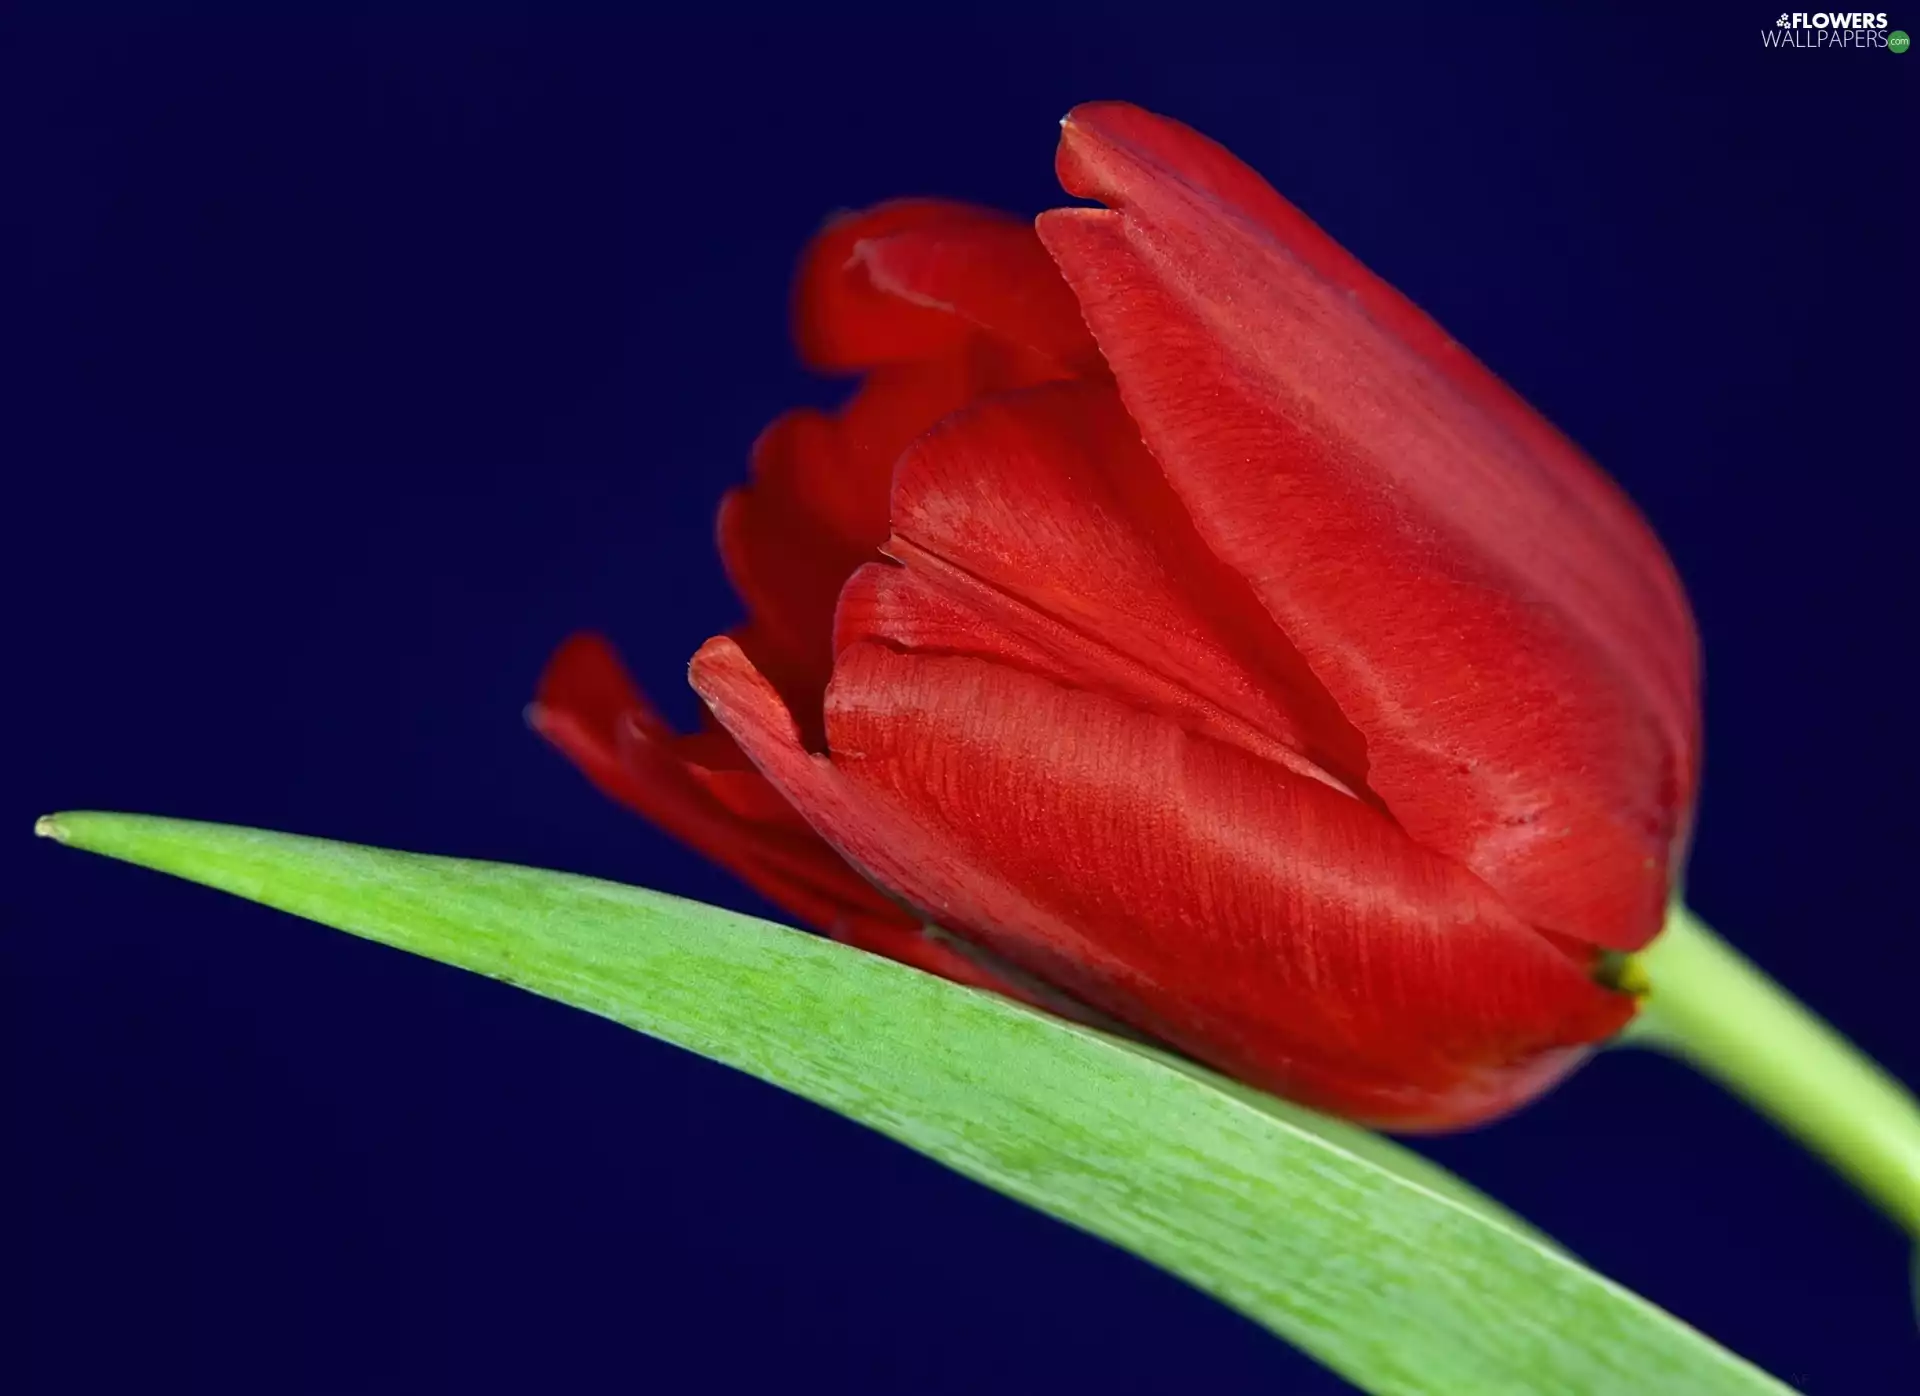 leaf, Red, tulip